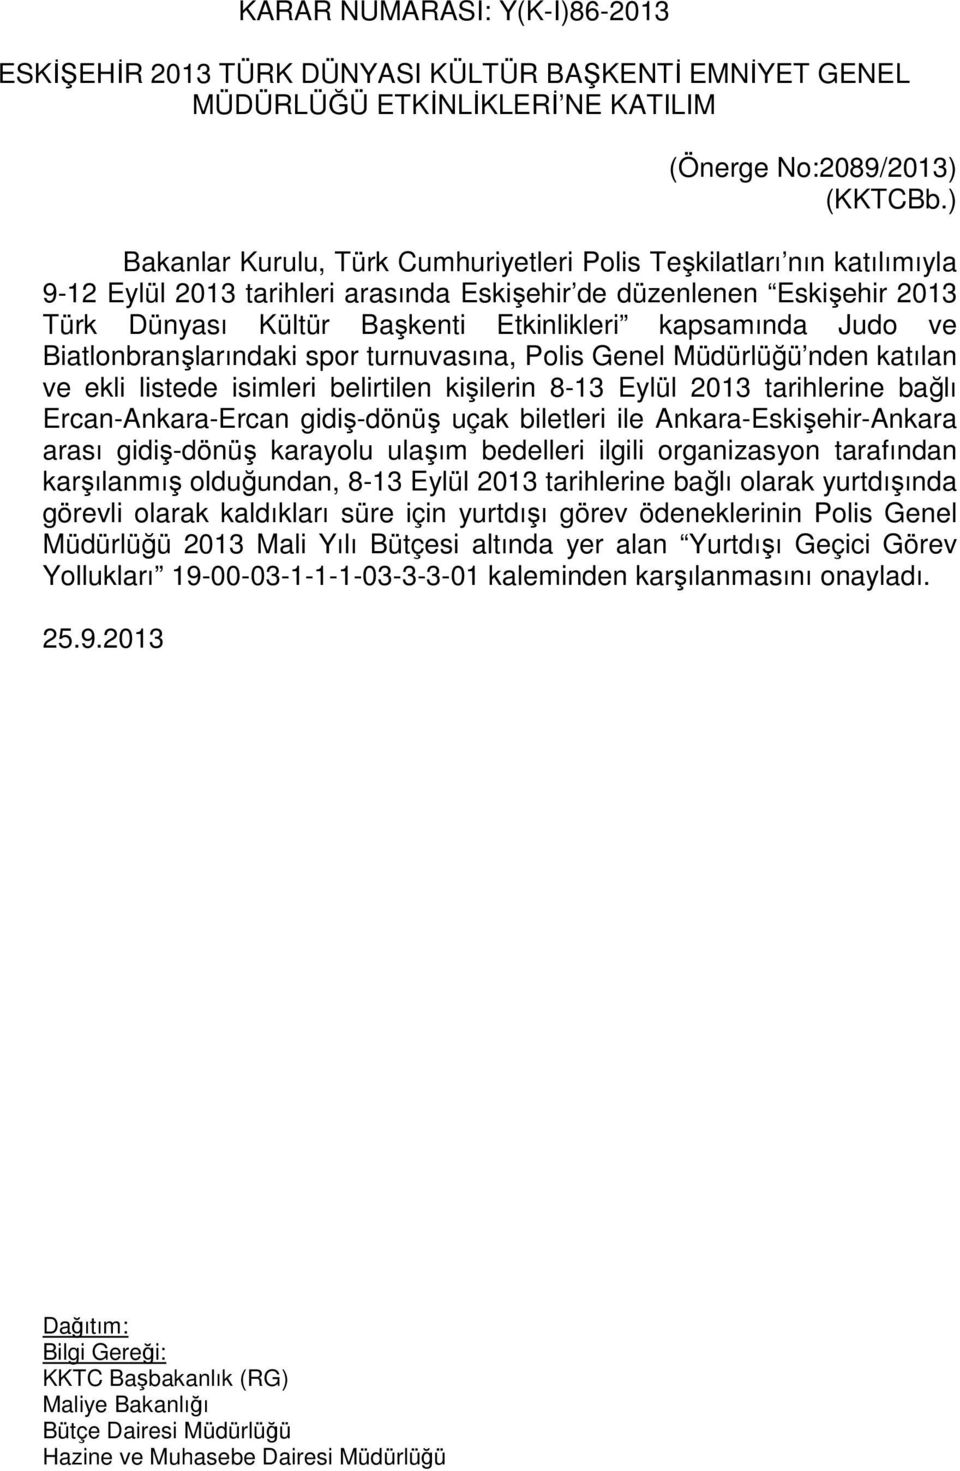 kapsamında Judo ve Biatlonbranşlarındaki spor turnuvasına, Polis Genel Müdürlüğü nden katılan ve ekli listede isimleri belirtilen kişilerin 8-13 Eylül 2013 tarihlerine bağlı Ercan-Ankara-Ercan